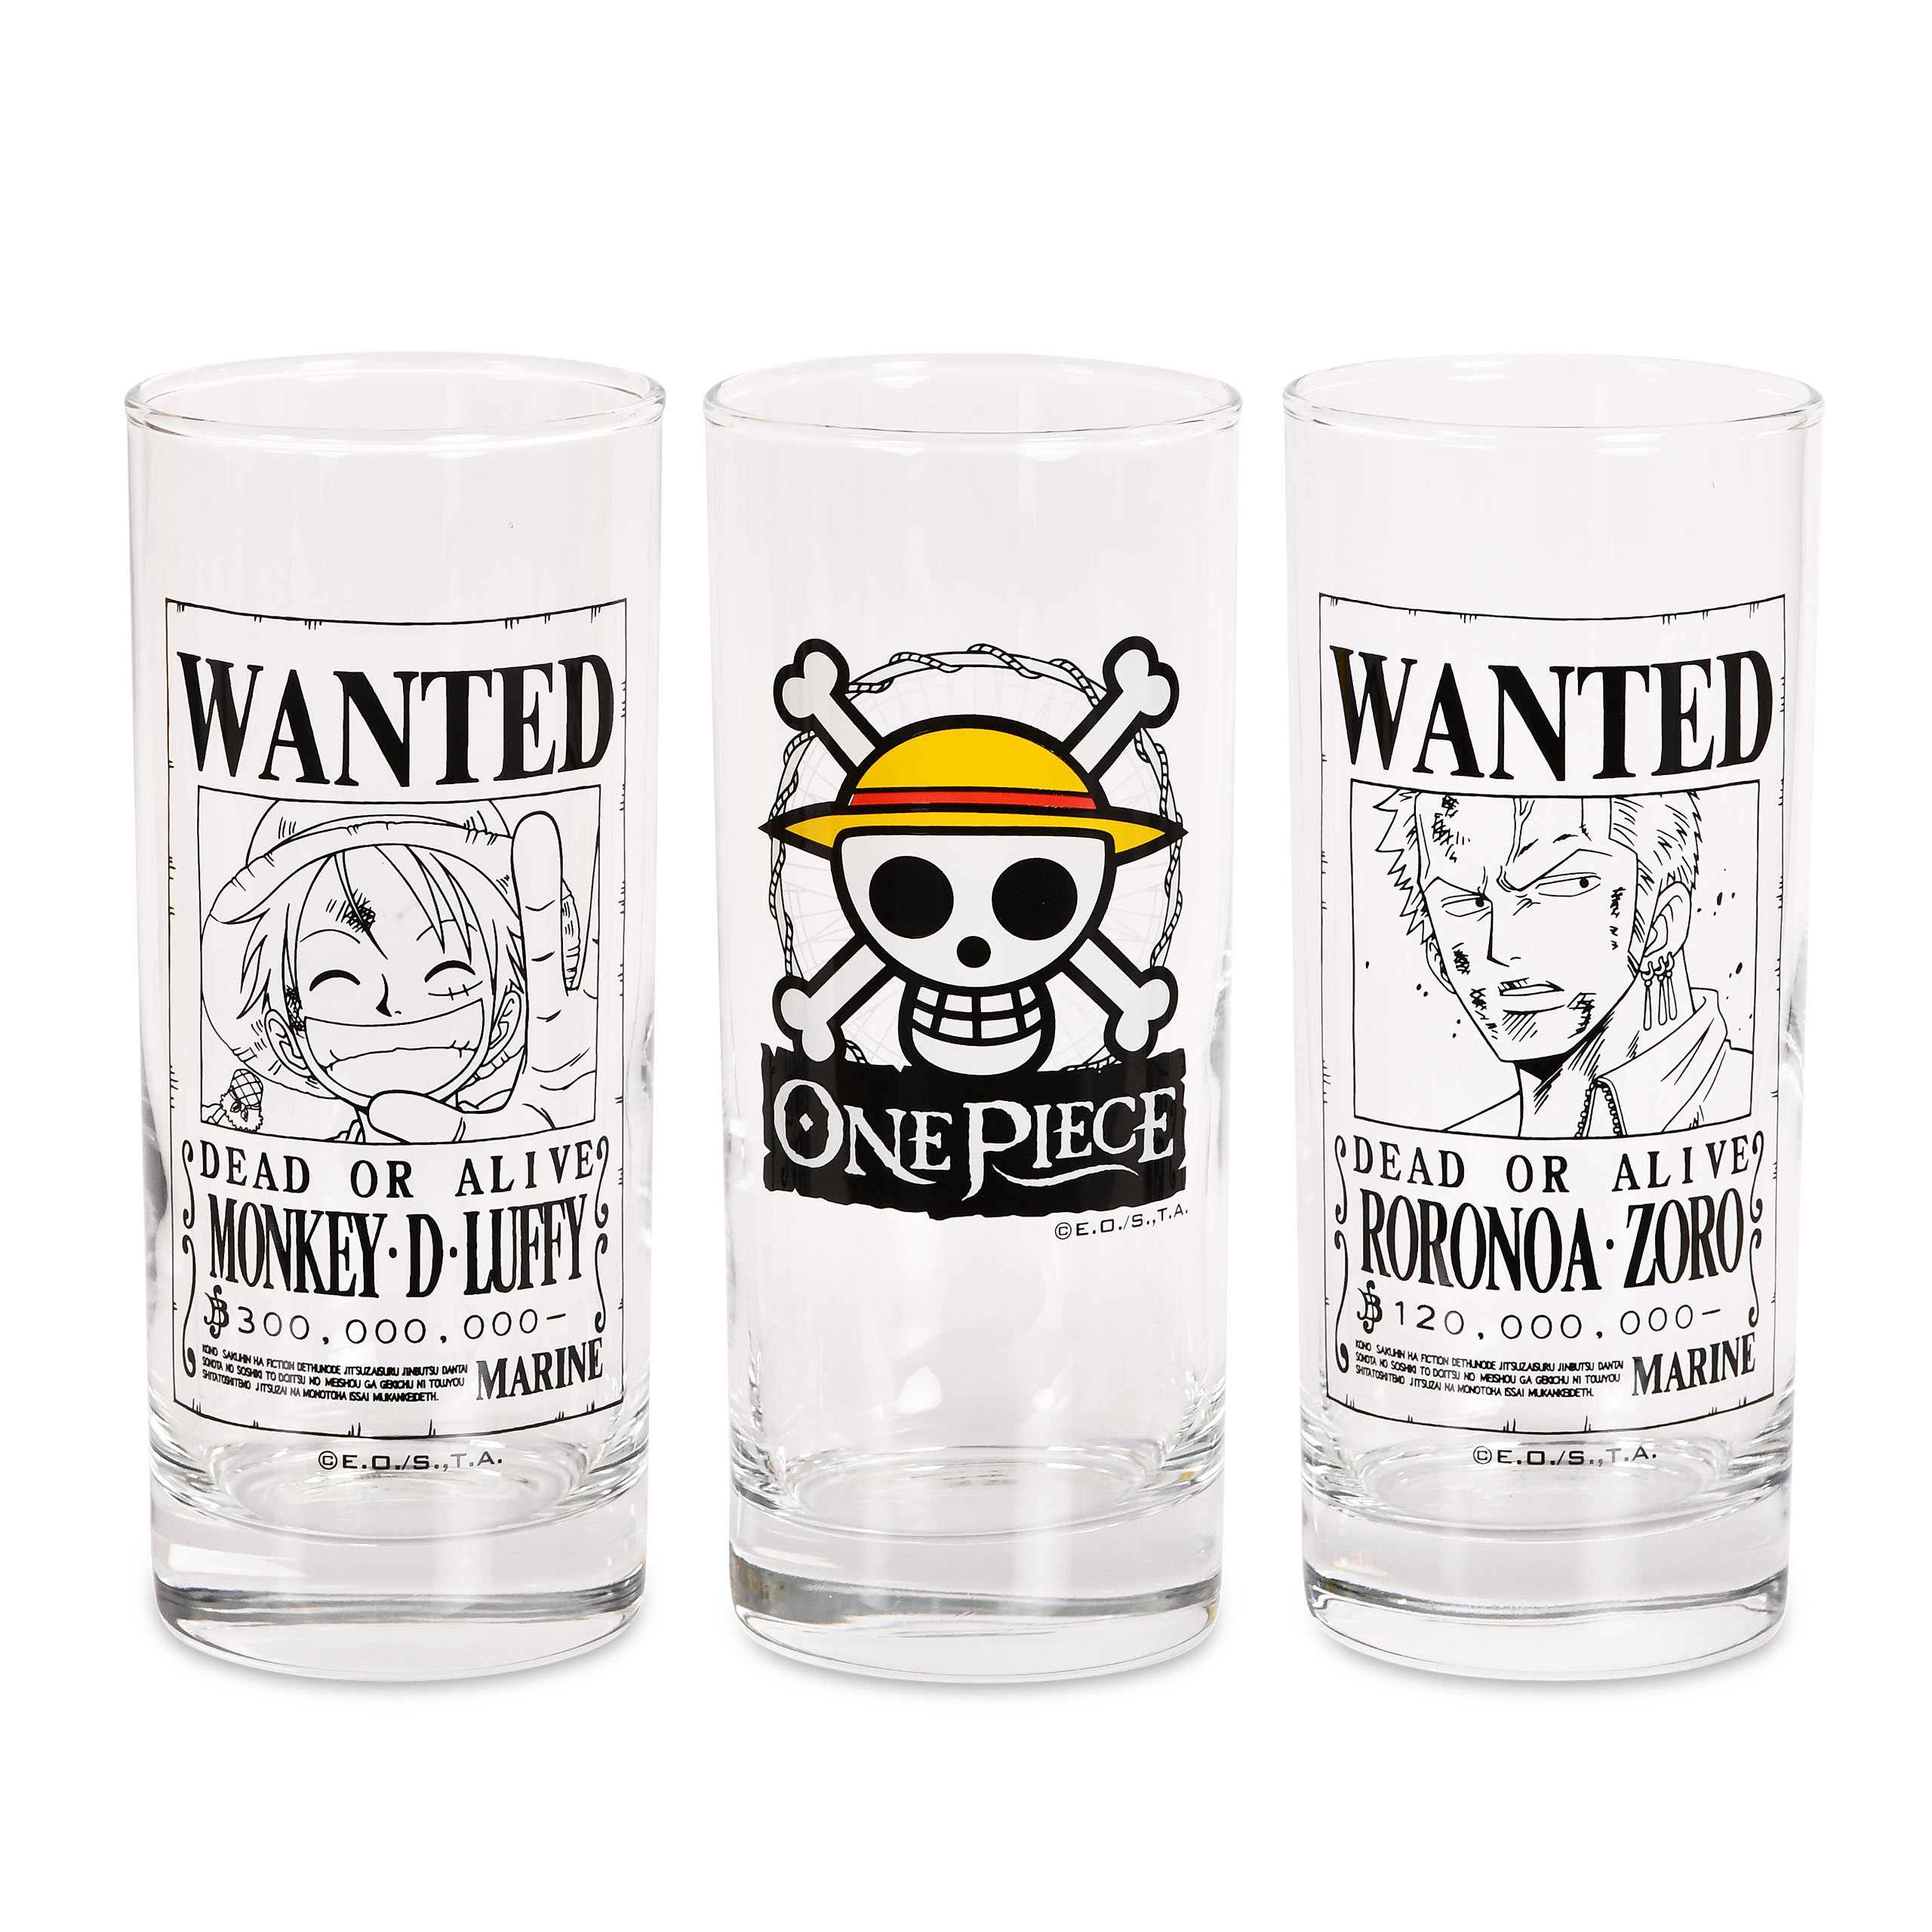 One Piece - Wanted Glazen set van 3